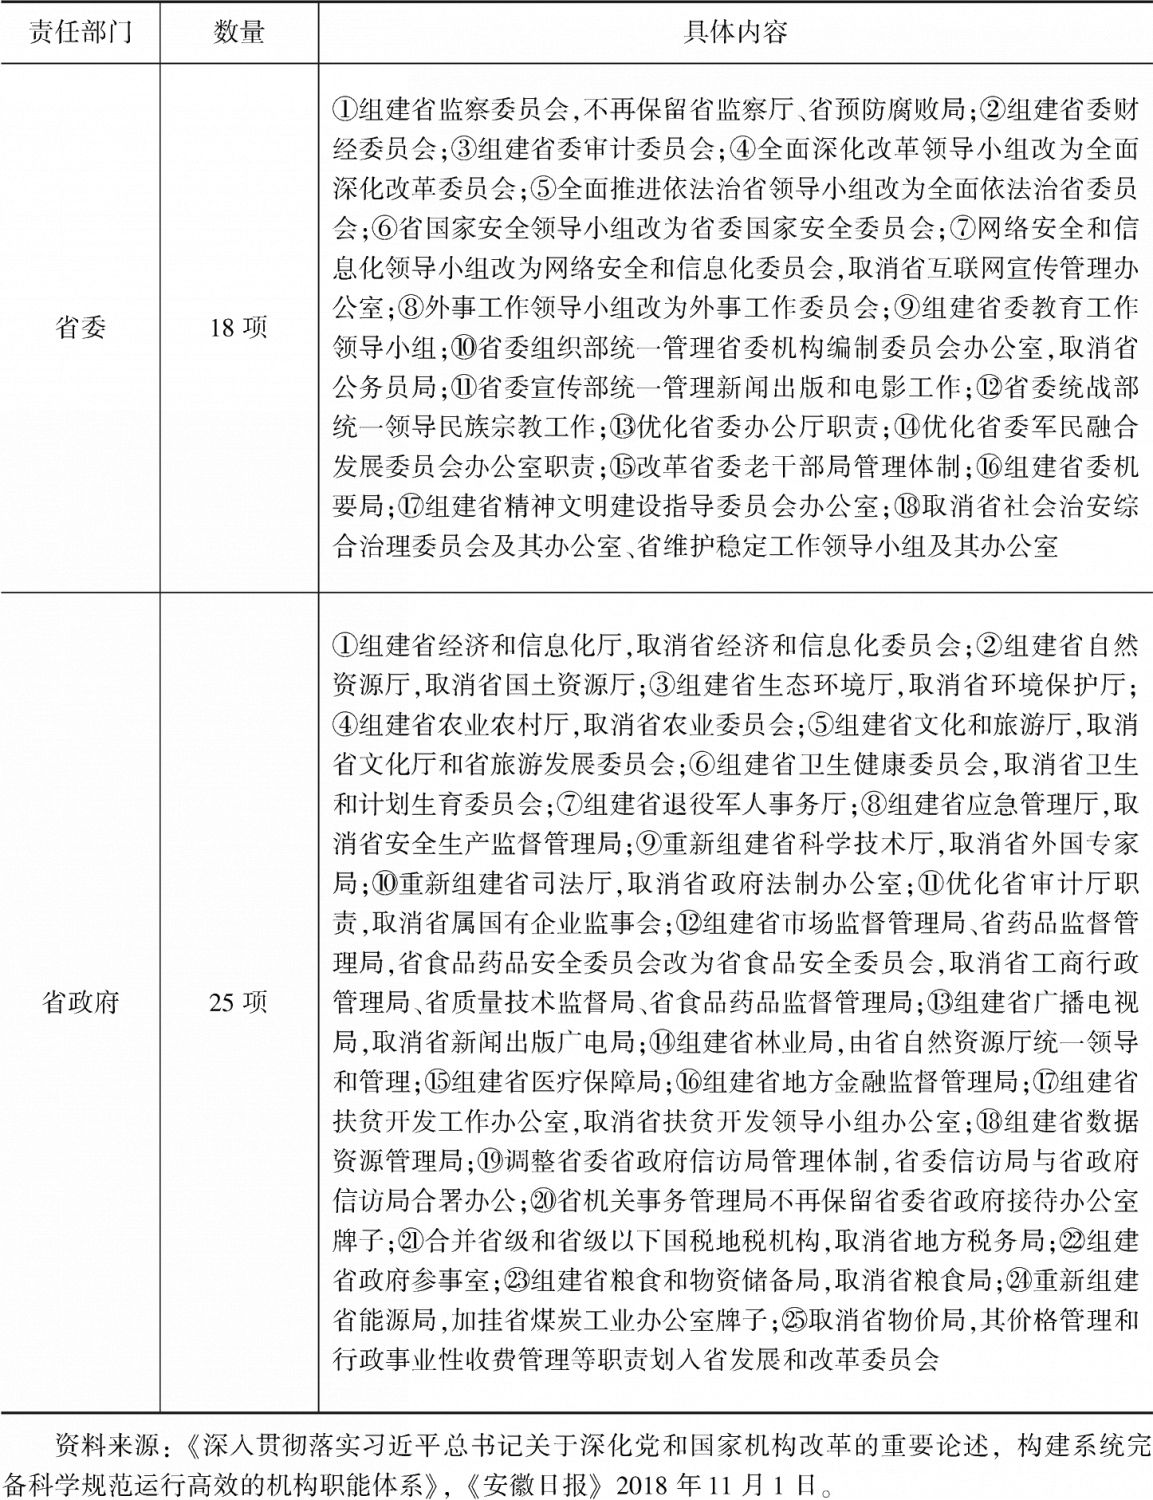 表1 安徽省2018年机构改革涉及部门清单